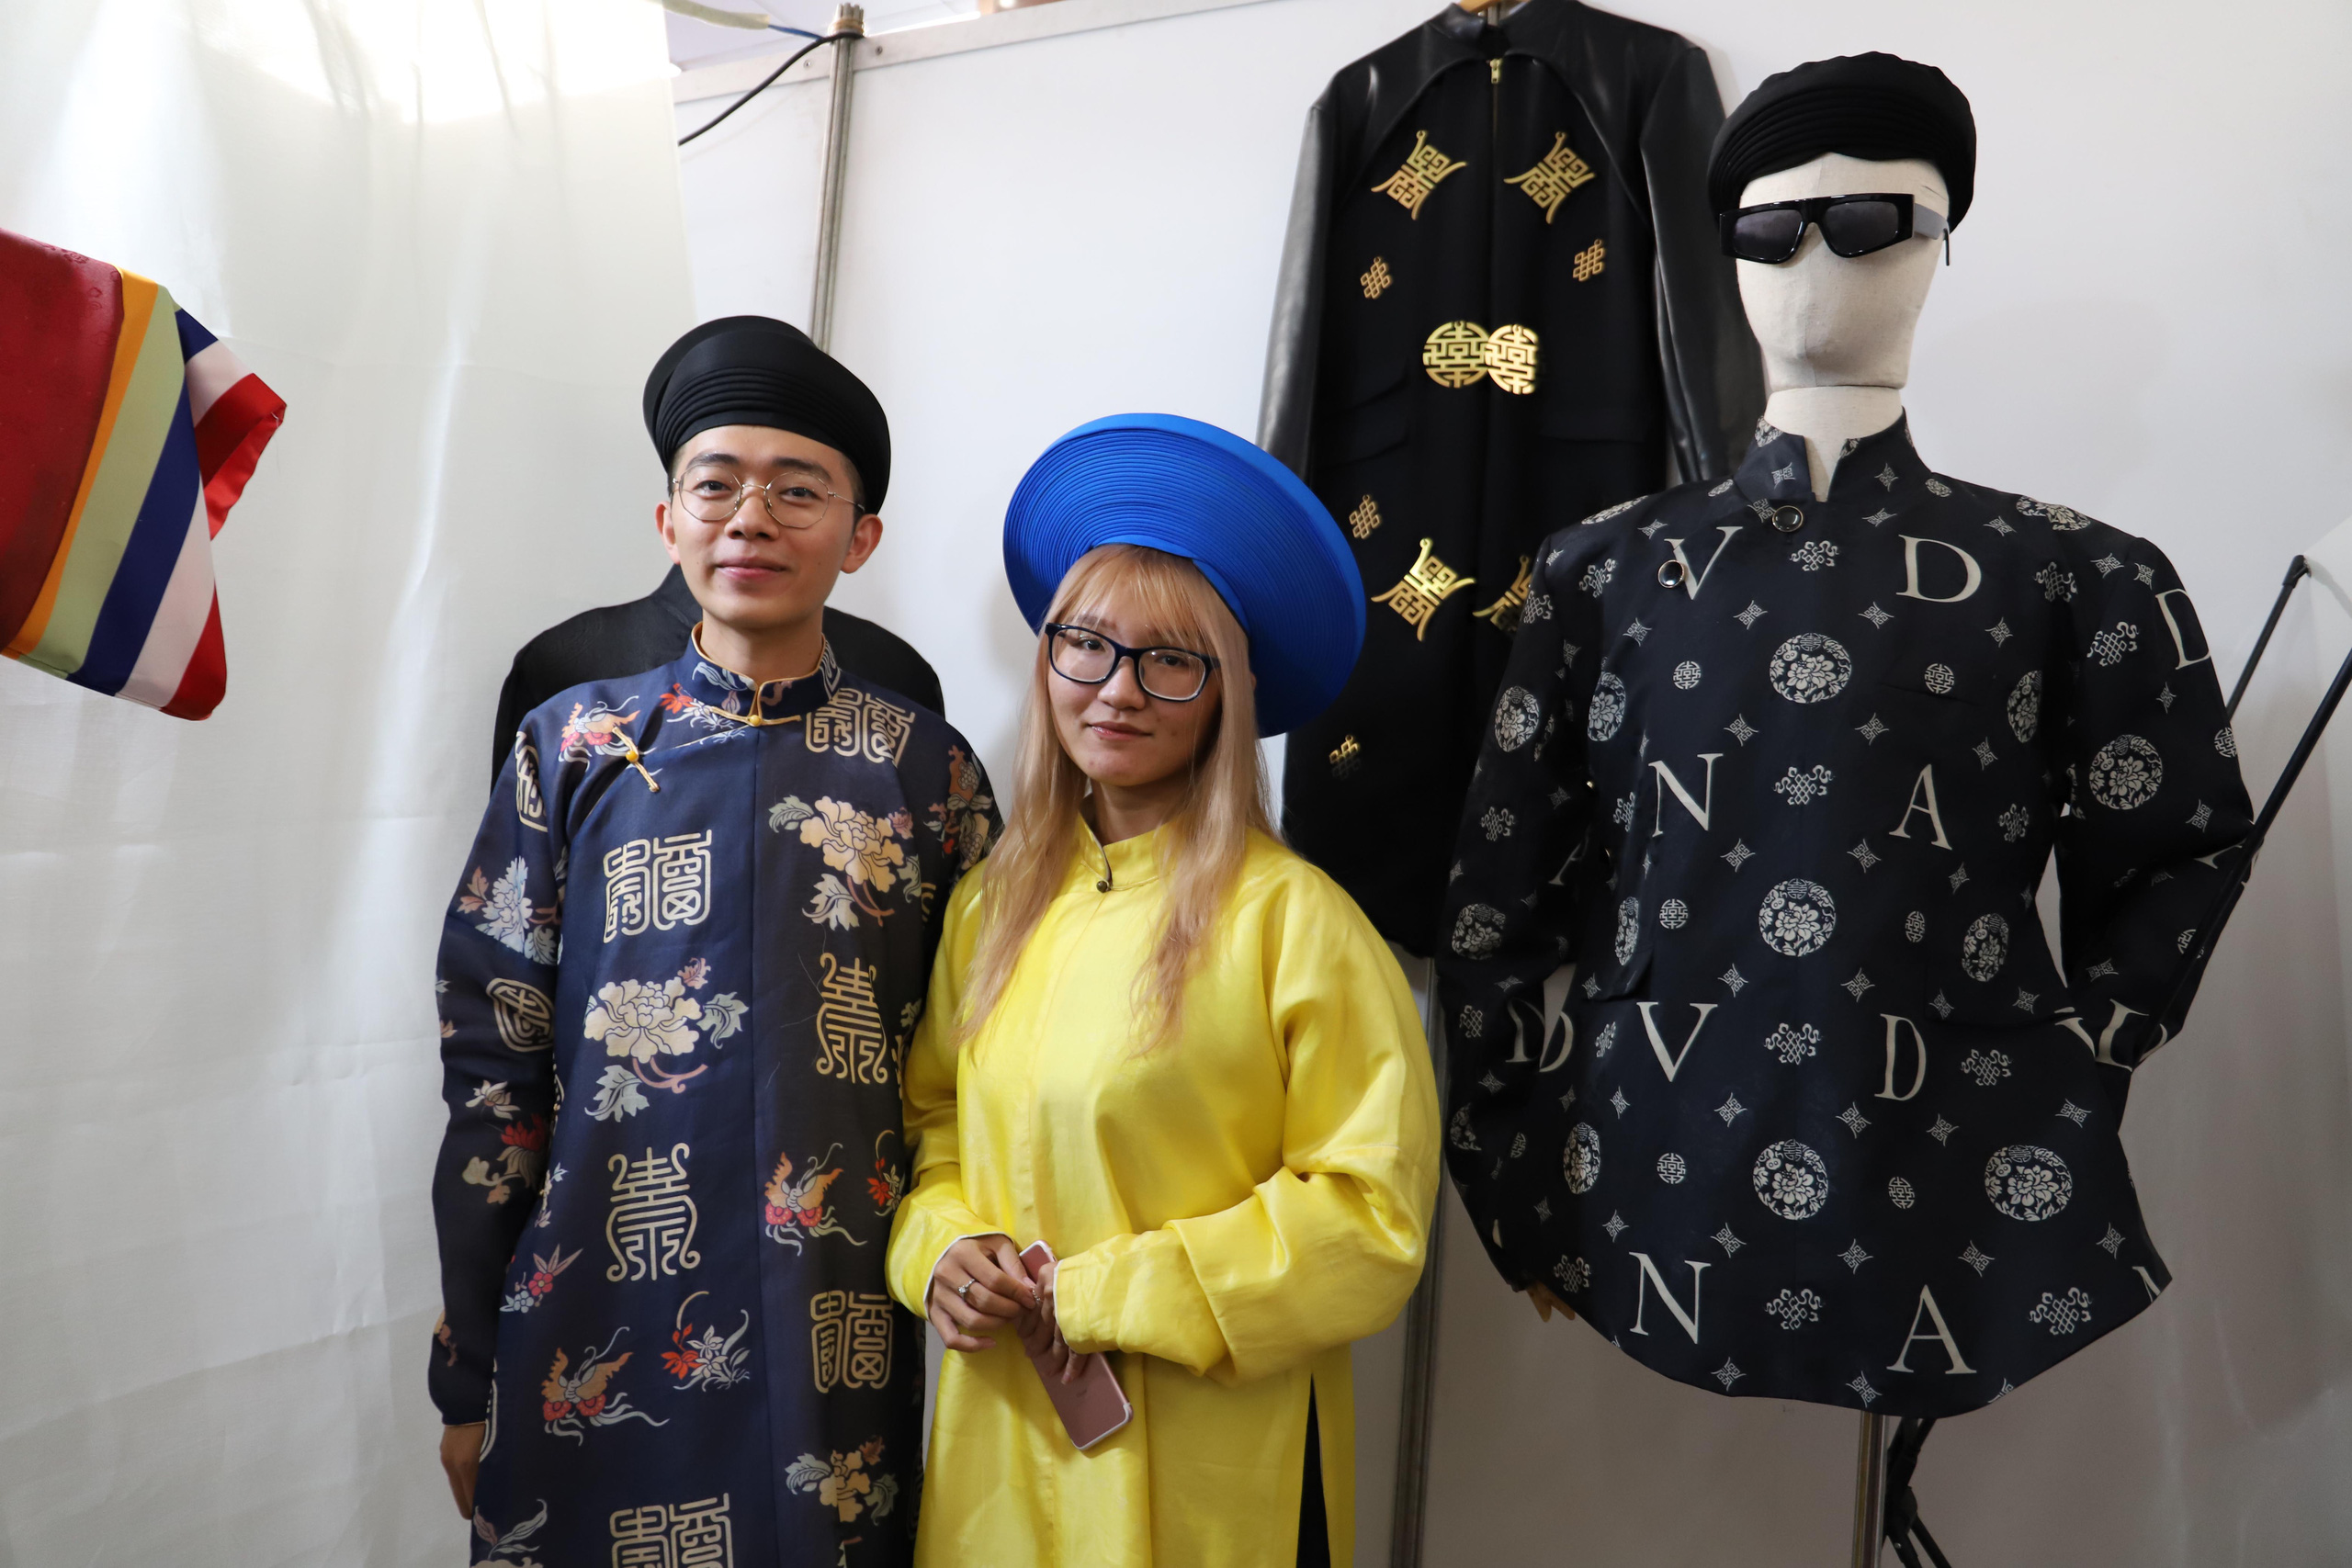 Chiêm ngưỡng những bộ áo dài cổ của phụ nữ tại Ngày hội Việt phục - Ảnh 8.